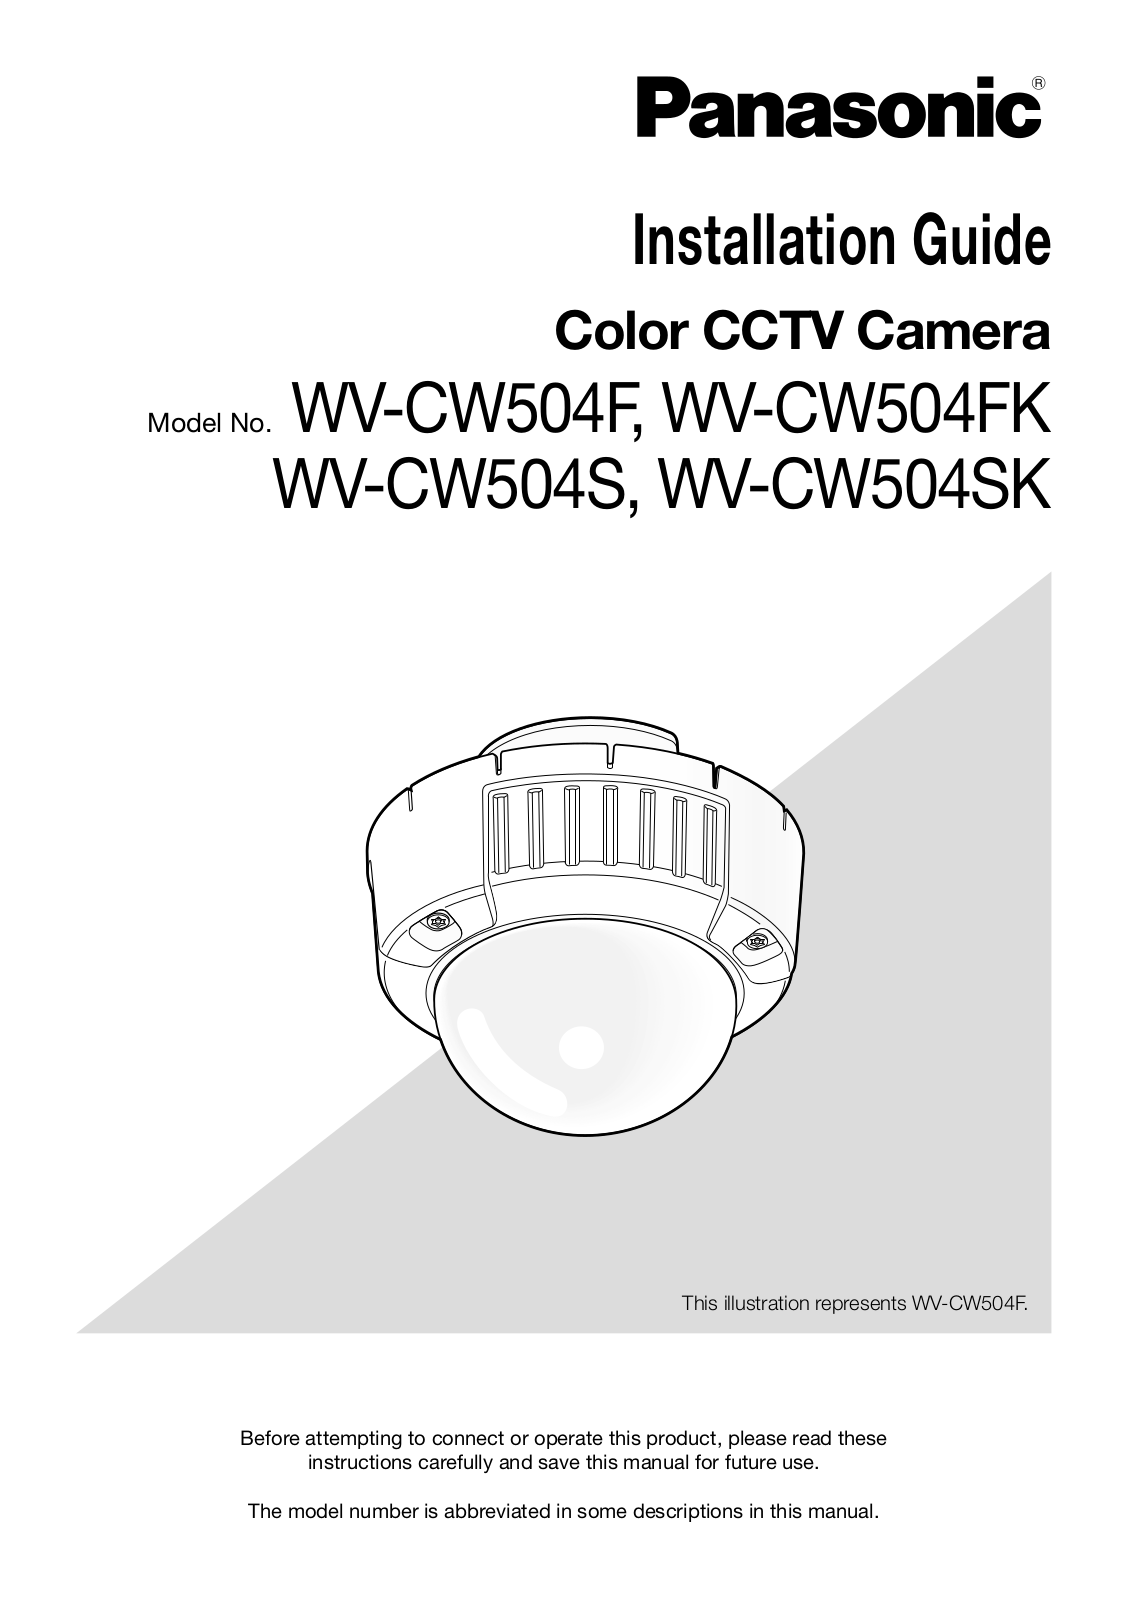 Panasonic WV-CW504S, WV-CW504FK User Manual